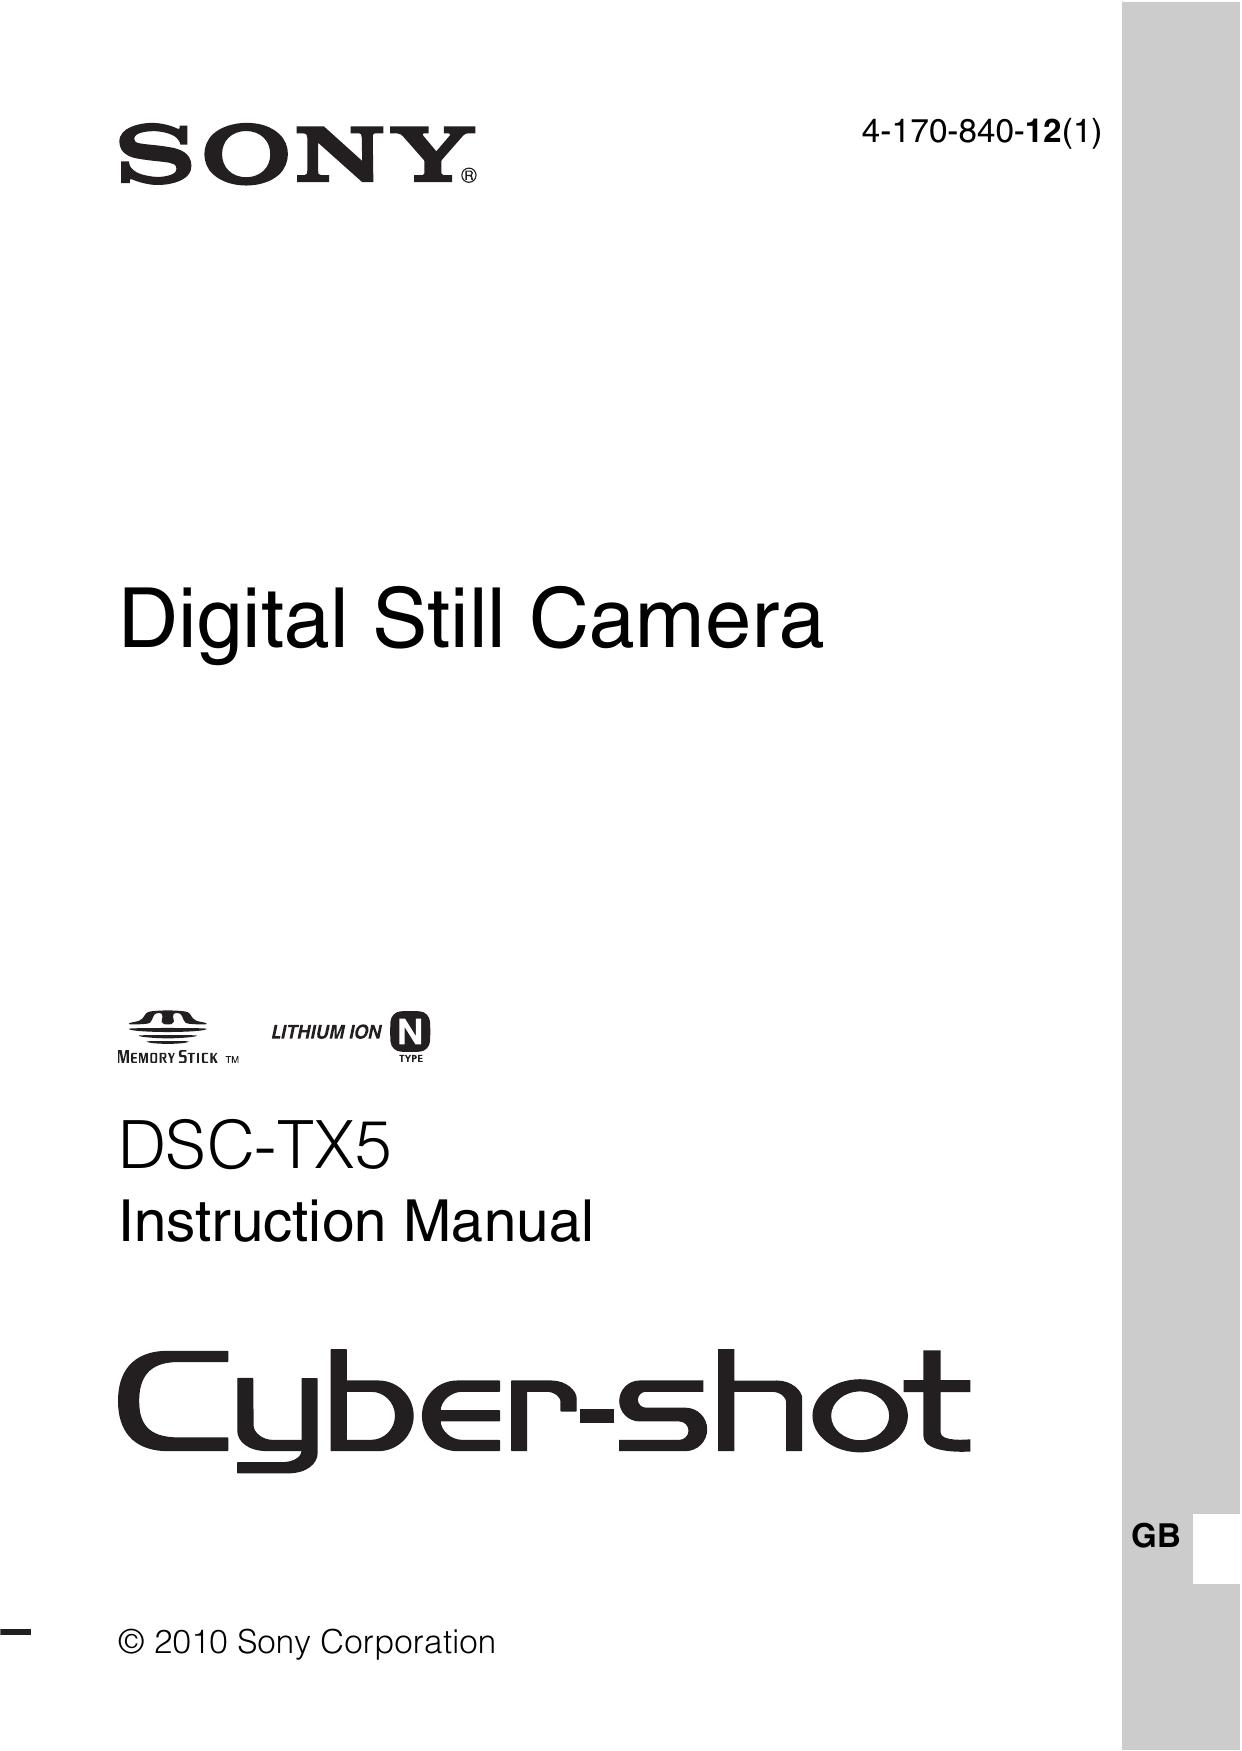 Sony 4-170-840-12(1) Digital Camera User Manual